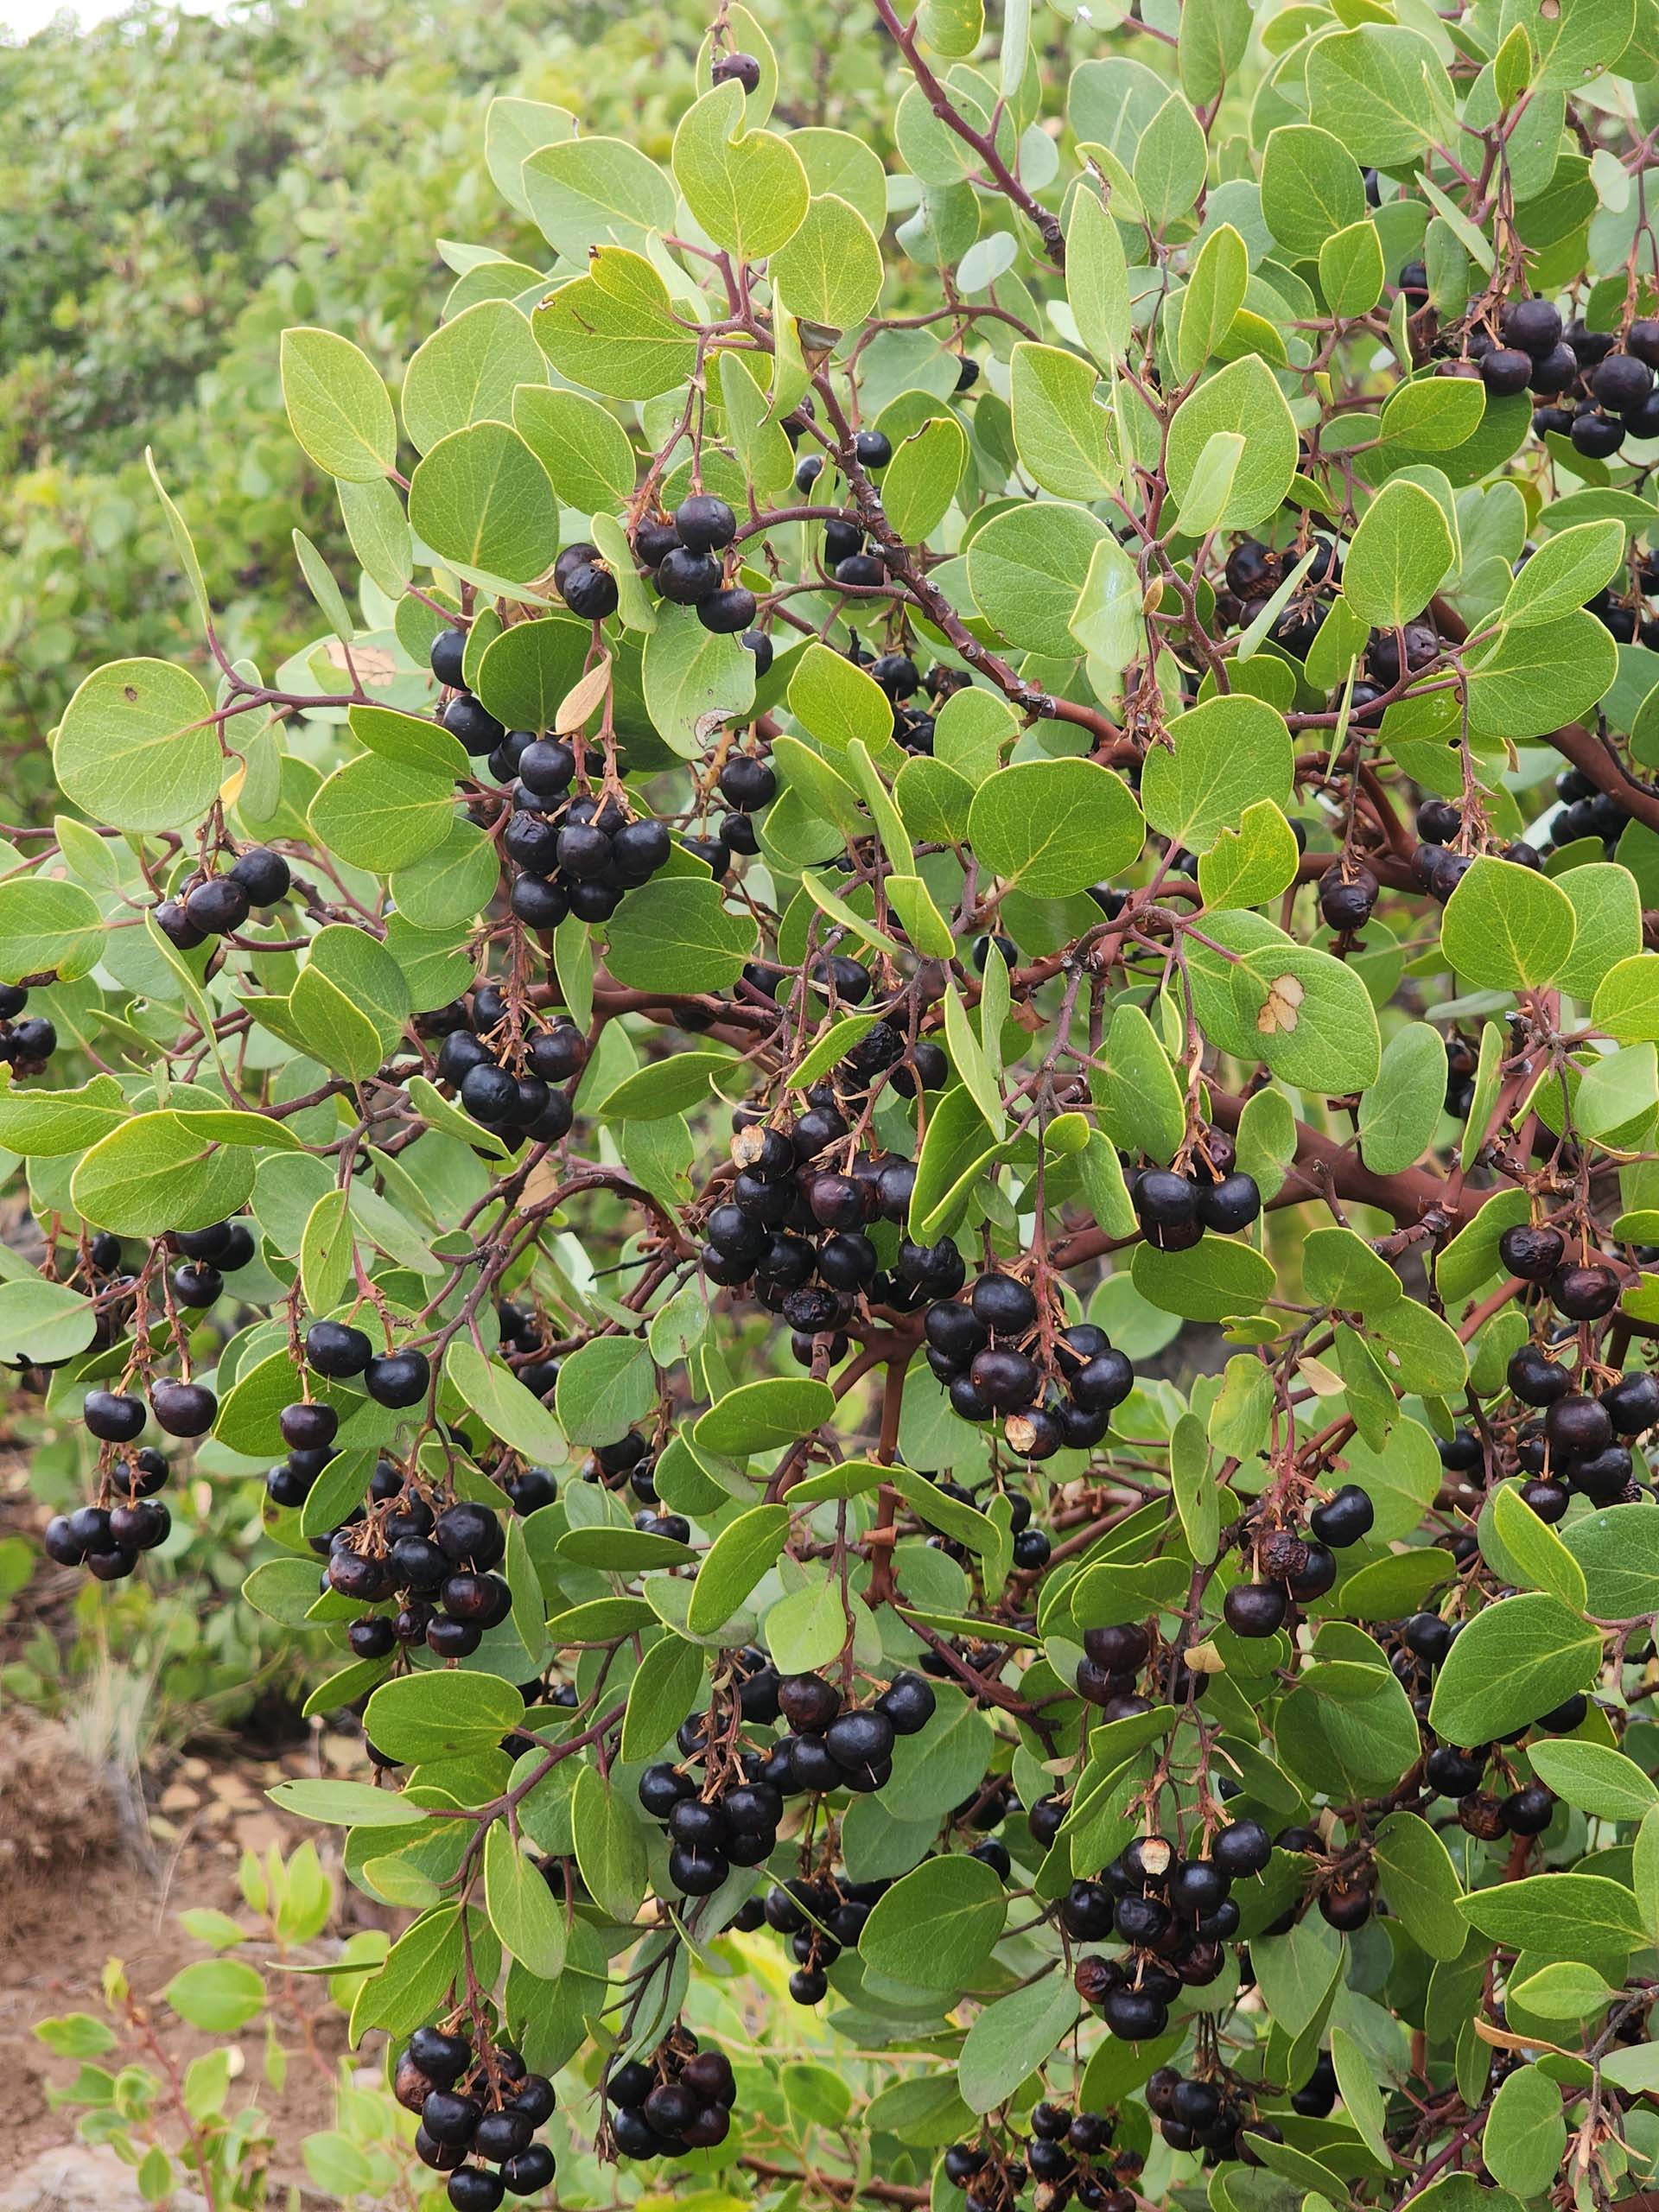 Greenleaf manzanita in fruit. D. Burk. September 24, 2023. Hat Creek Rim PCT.